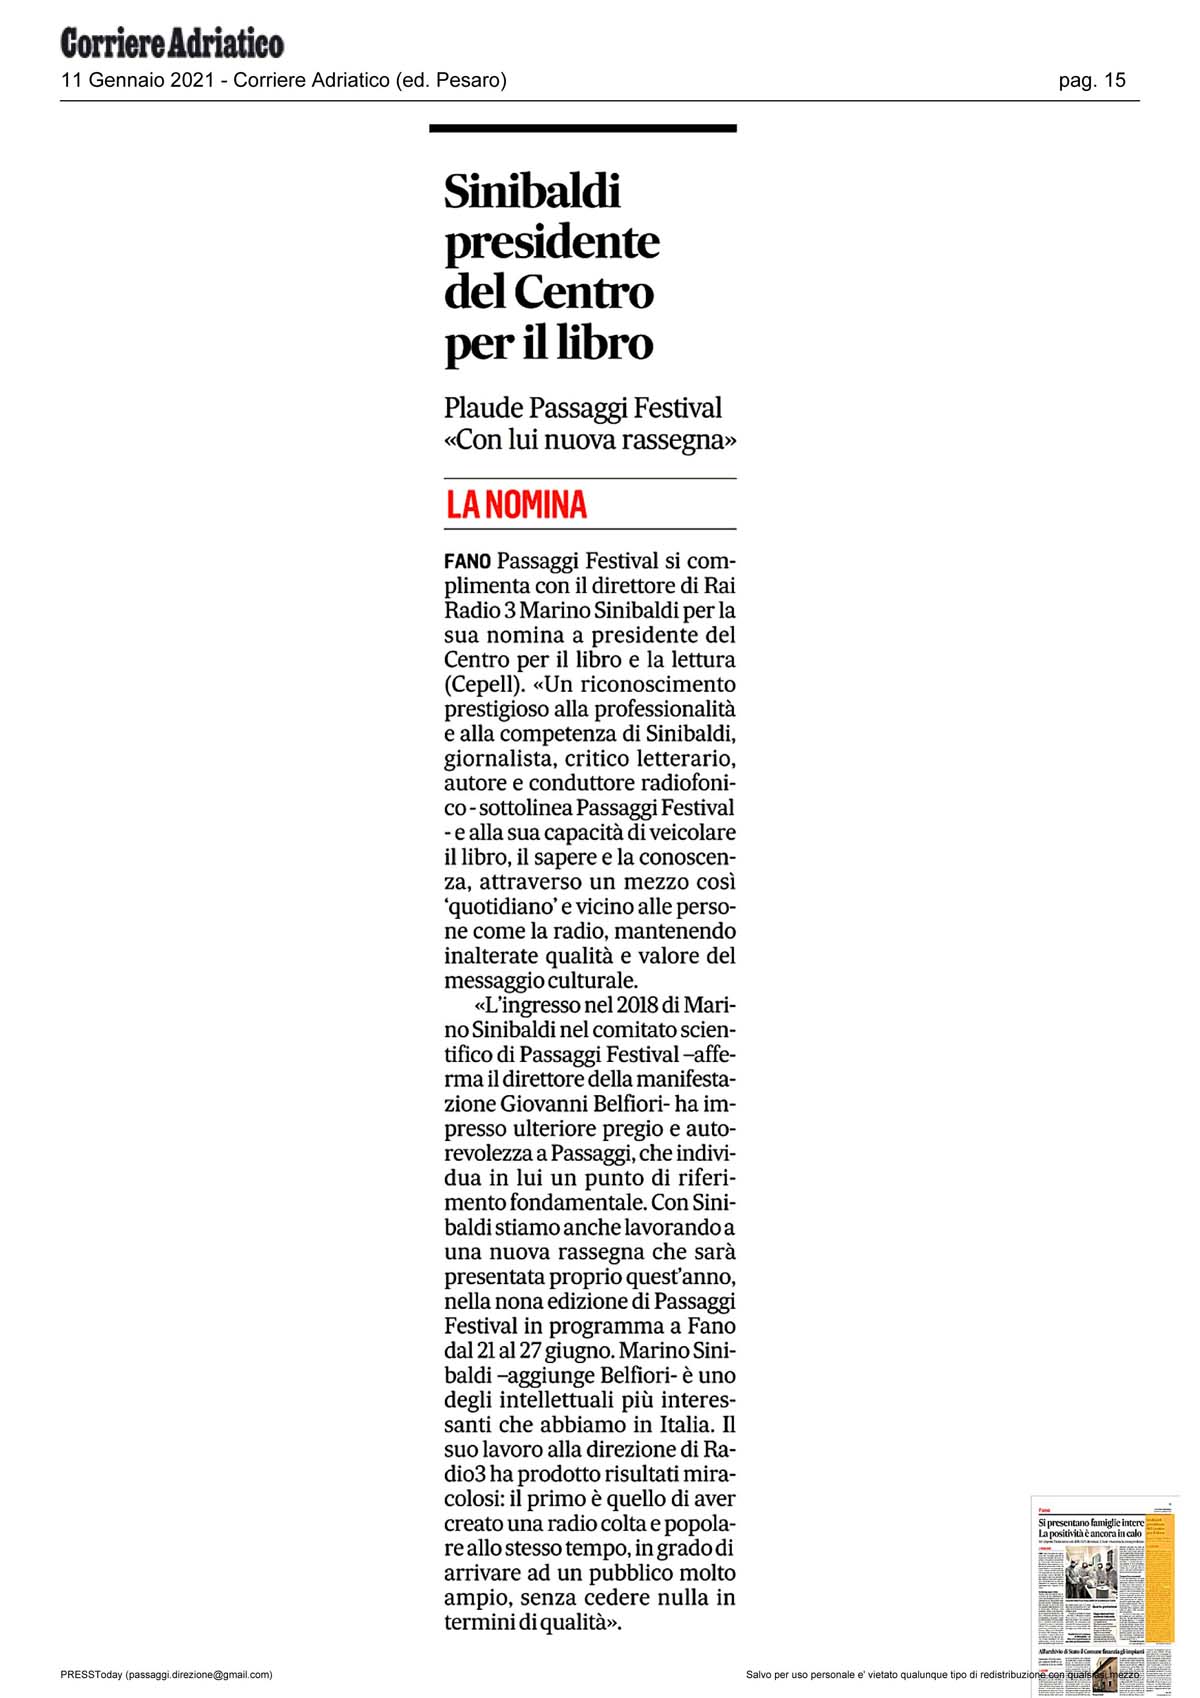 Corriere_Adriatico_sinibaldi_presidente_del_centro_per_il_libro